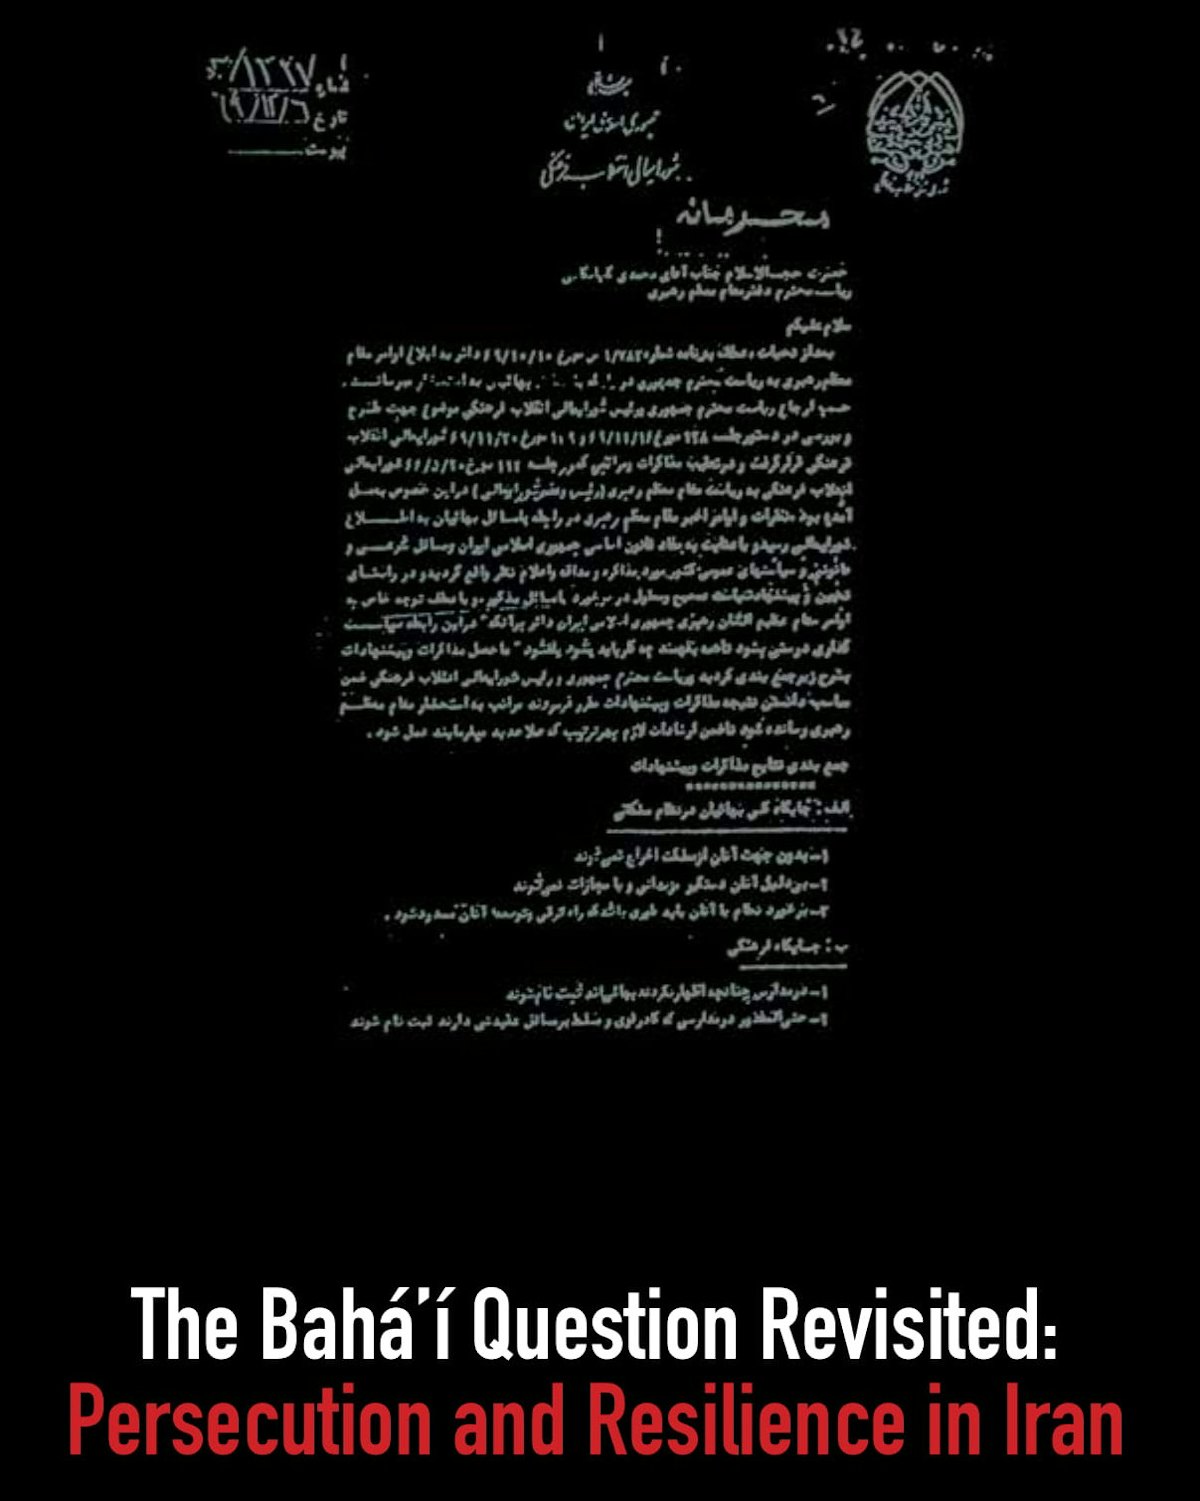 La Cuestión Bahá'í Revisada: Persecución y resiliencia en Irán, un informe publicado en octubre de 2016, describe la persecución sistemática de los bahá'ís por parte del gobierno iraní.